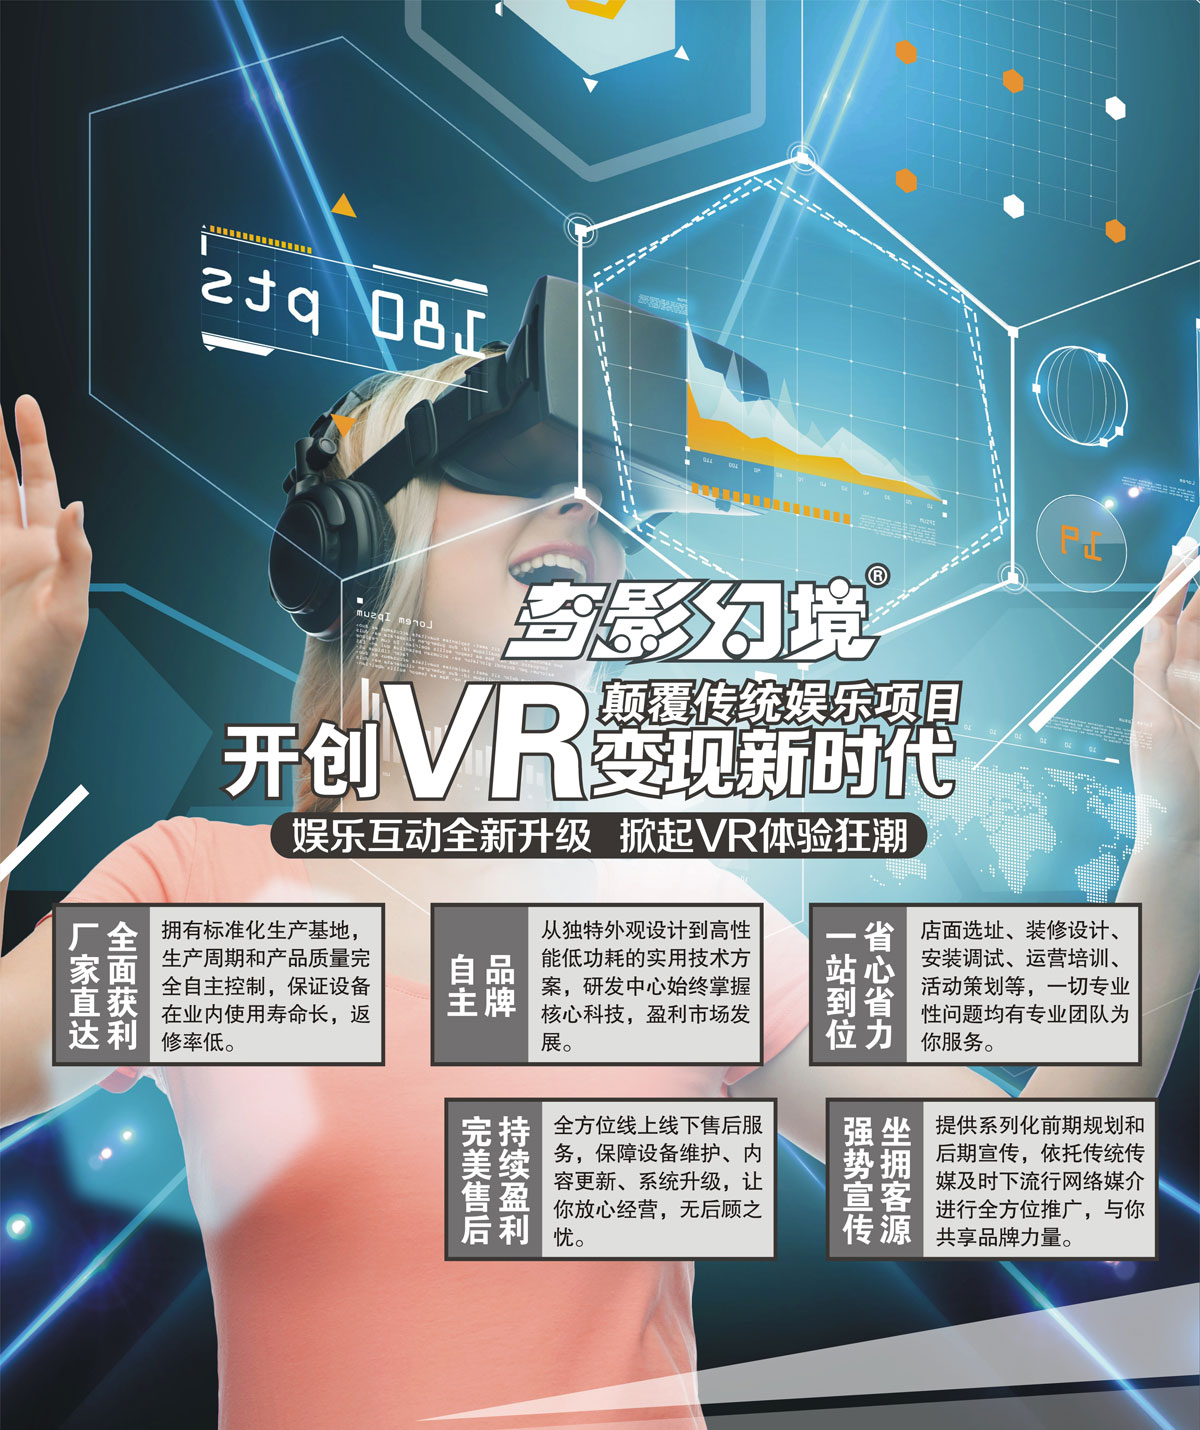 校园安全开创VR变现新时代颠覆传统娱乐项目.jpg